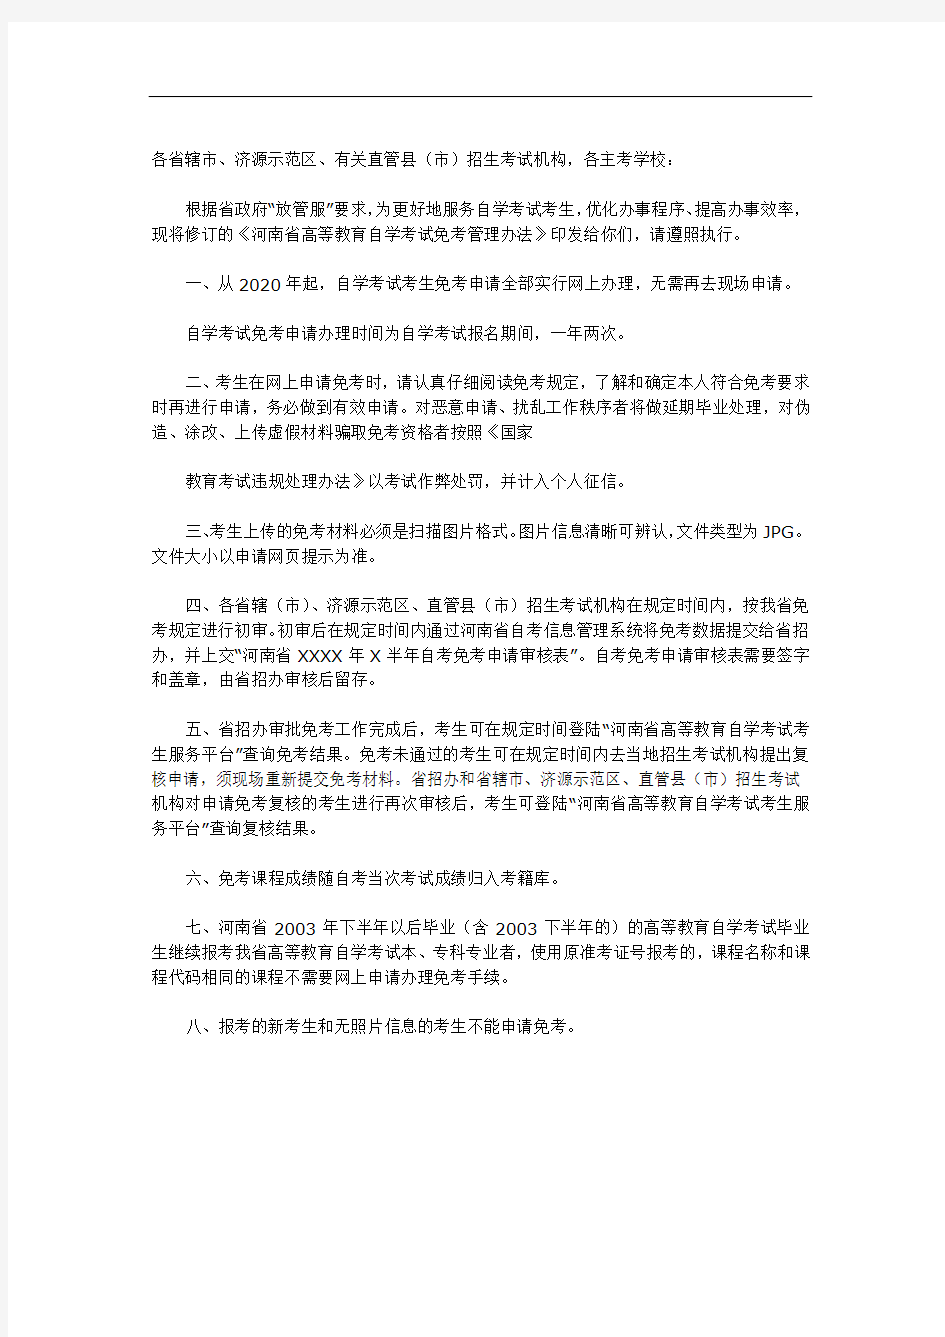 《河南省高等教育自学考试免考管理办法》